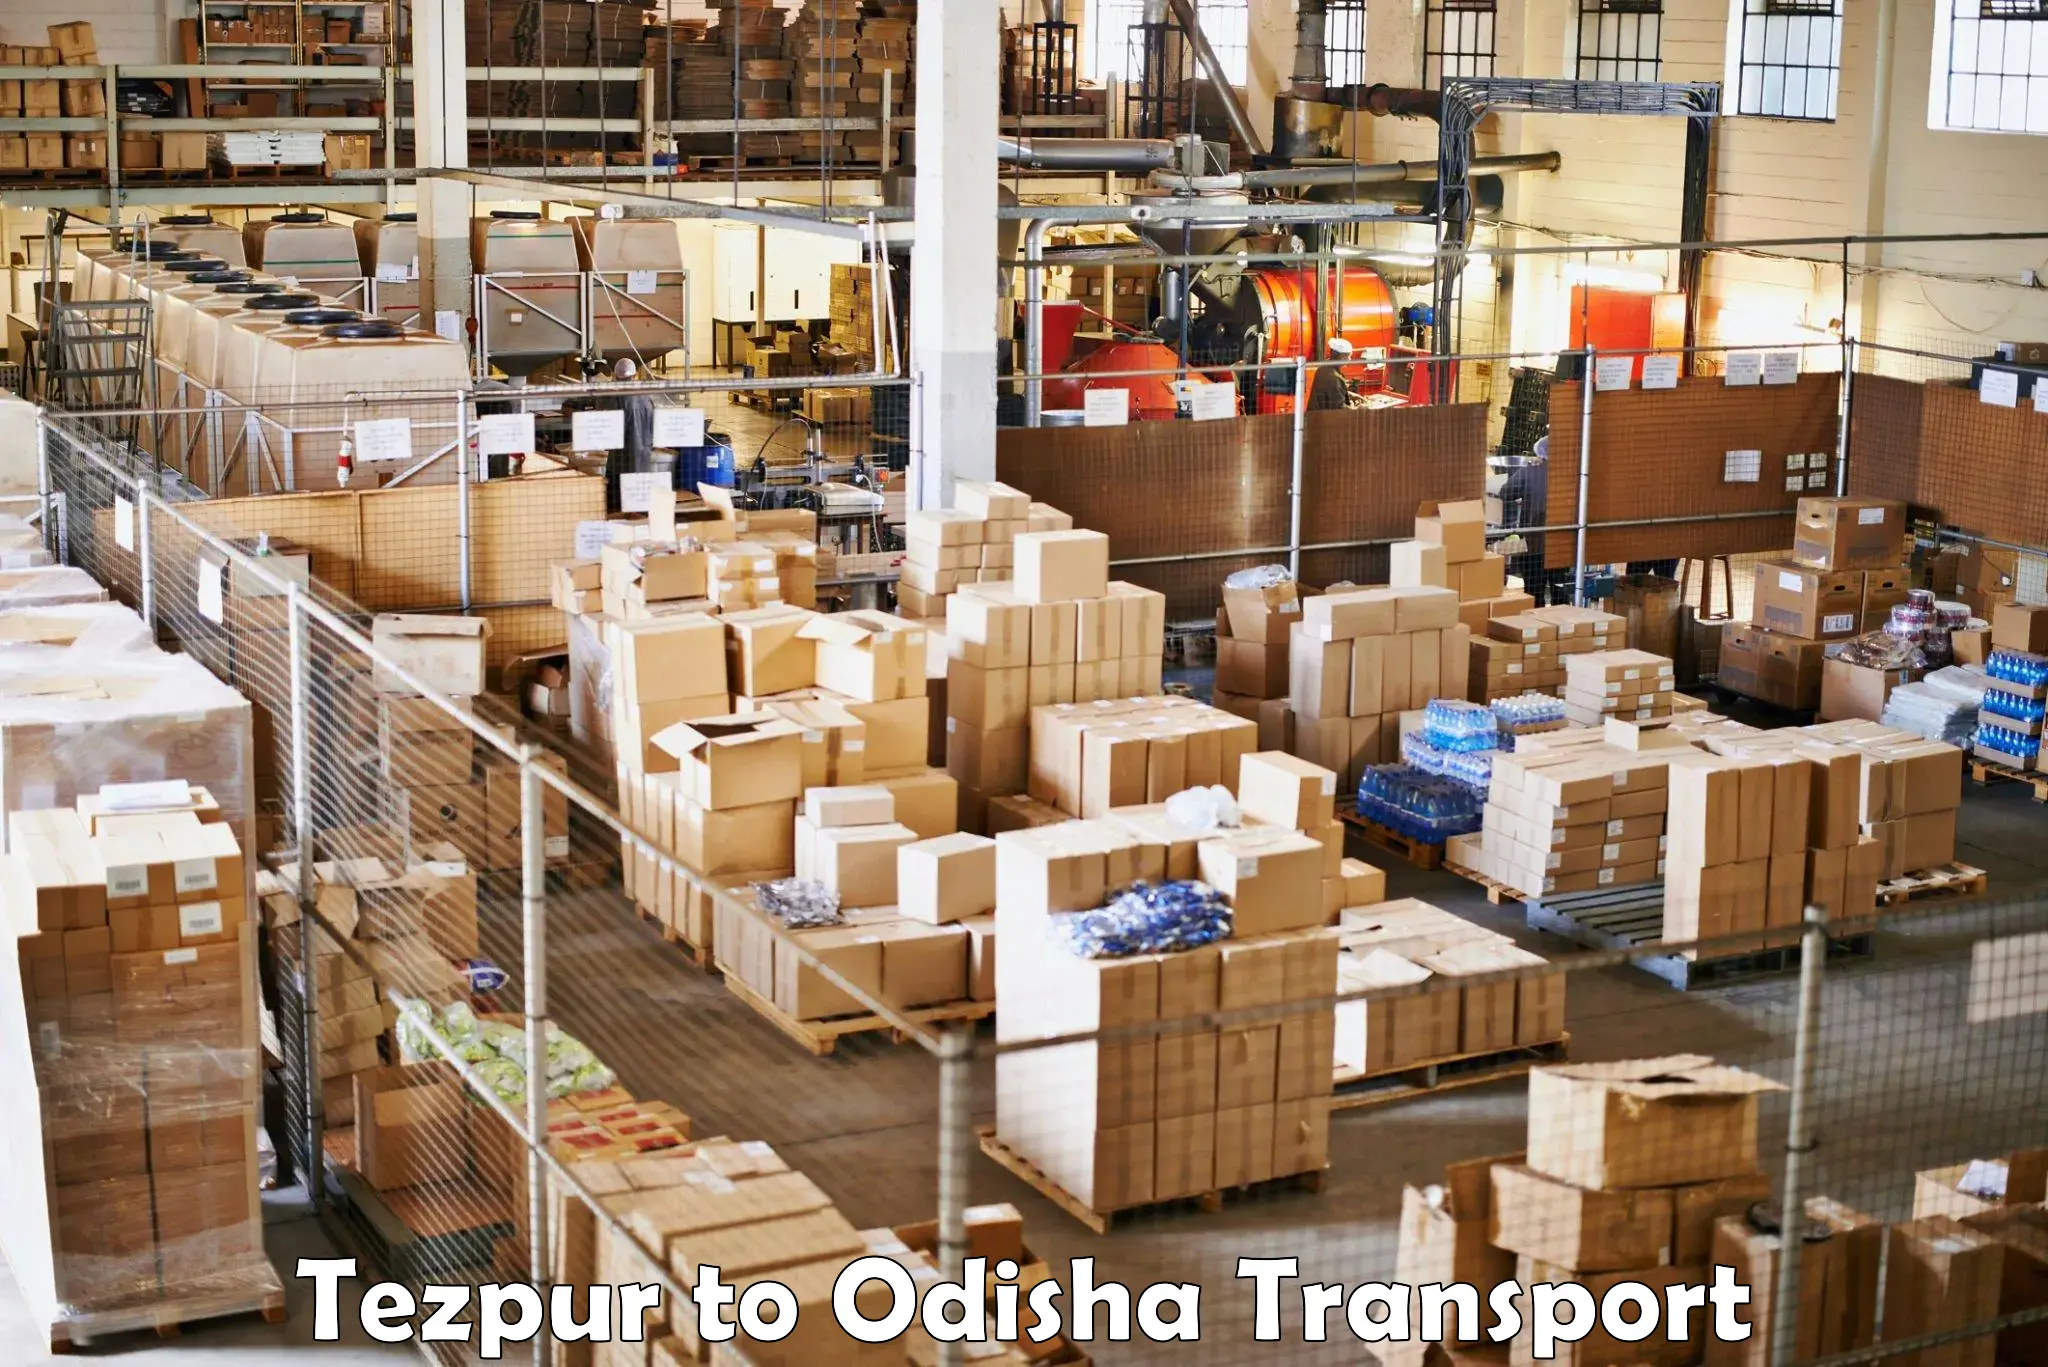 Shipping partner Tezpur to Baleswar